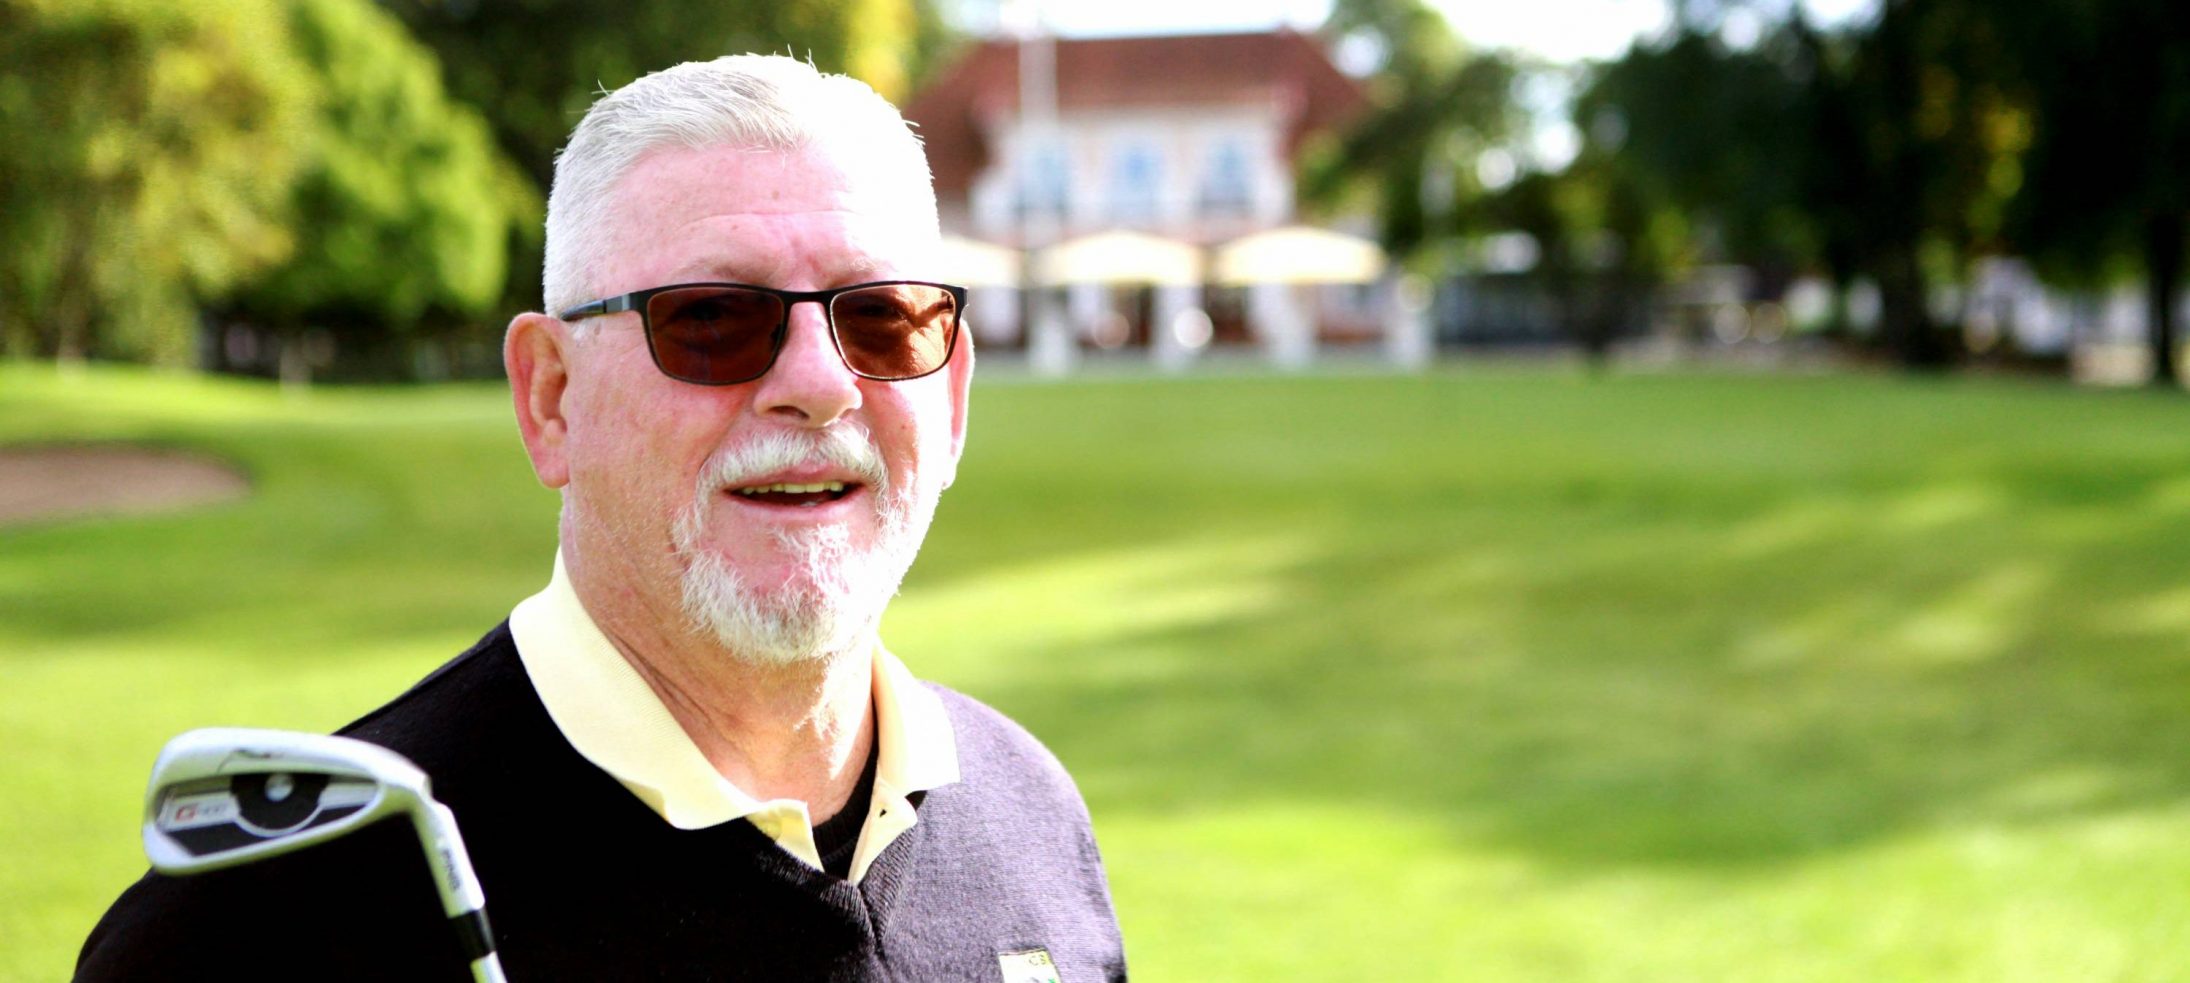 Senior med golfklubba, Leif Ziegler, med solglasögon framför golfbana och klubbhus på Kävlinge GK